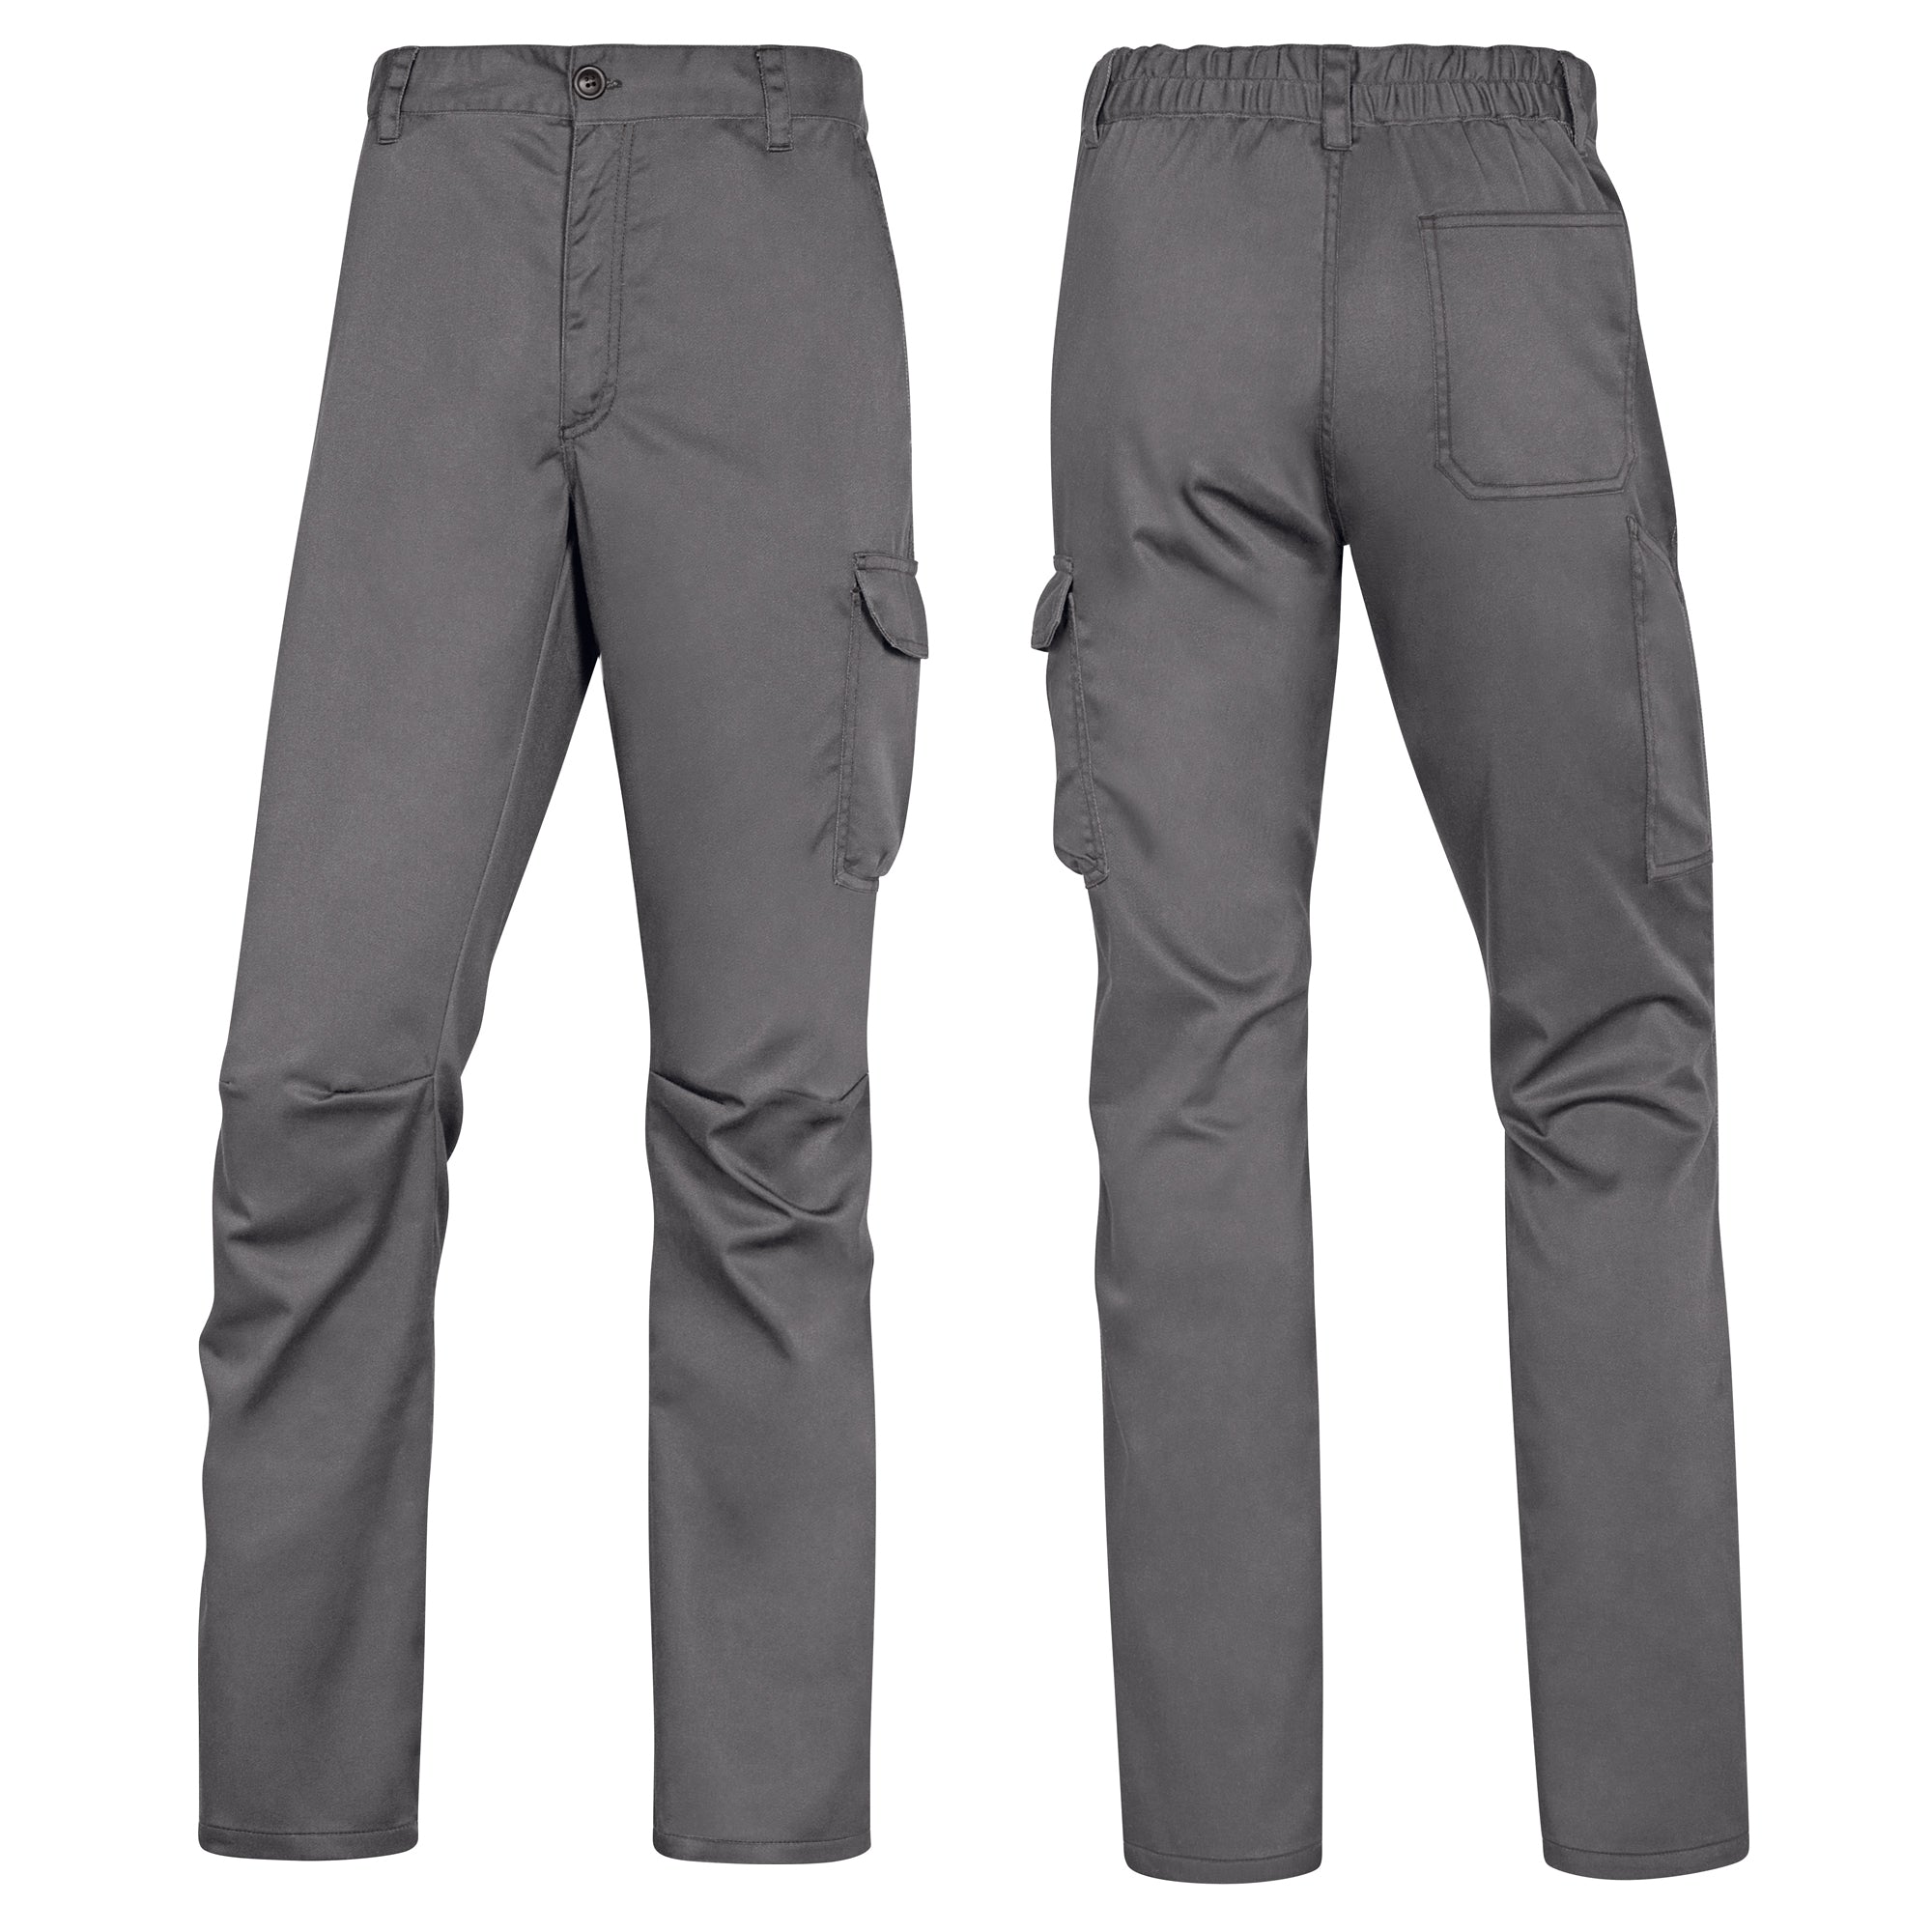 deltaplus-pantalone-lavoro-panostrpa-tg-xxl-grigio-nero